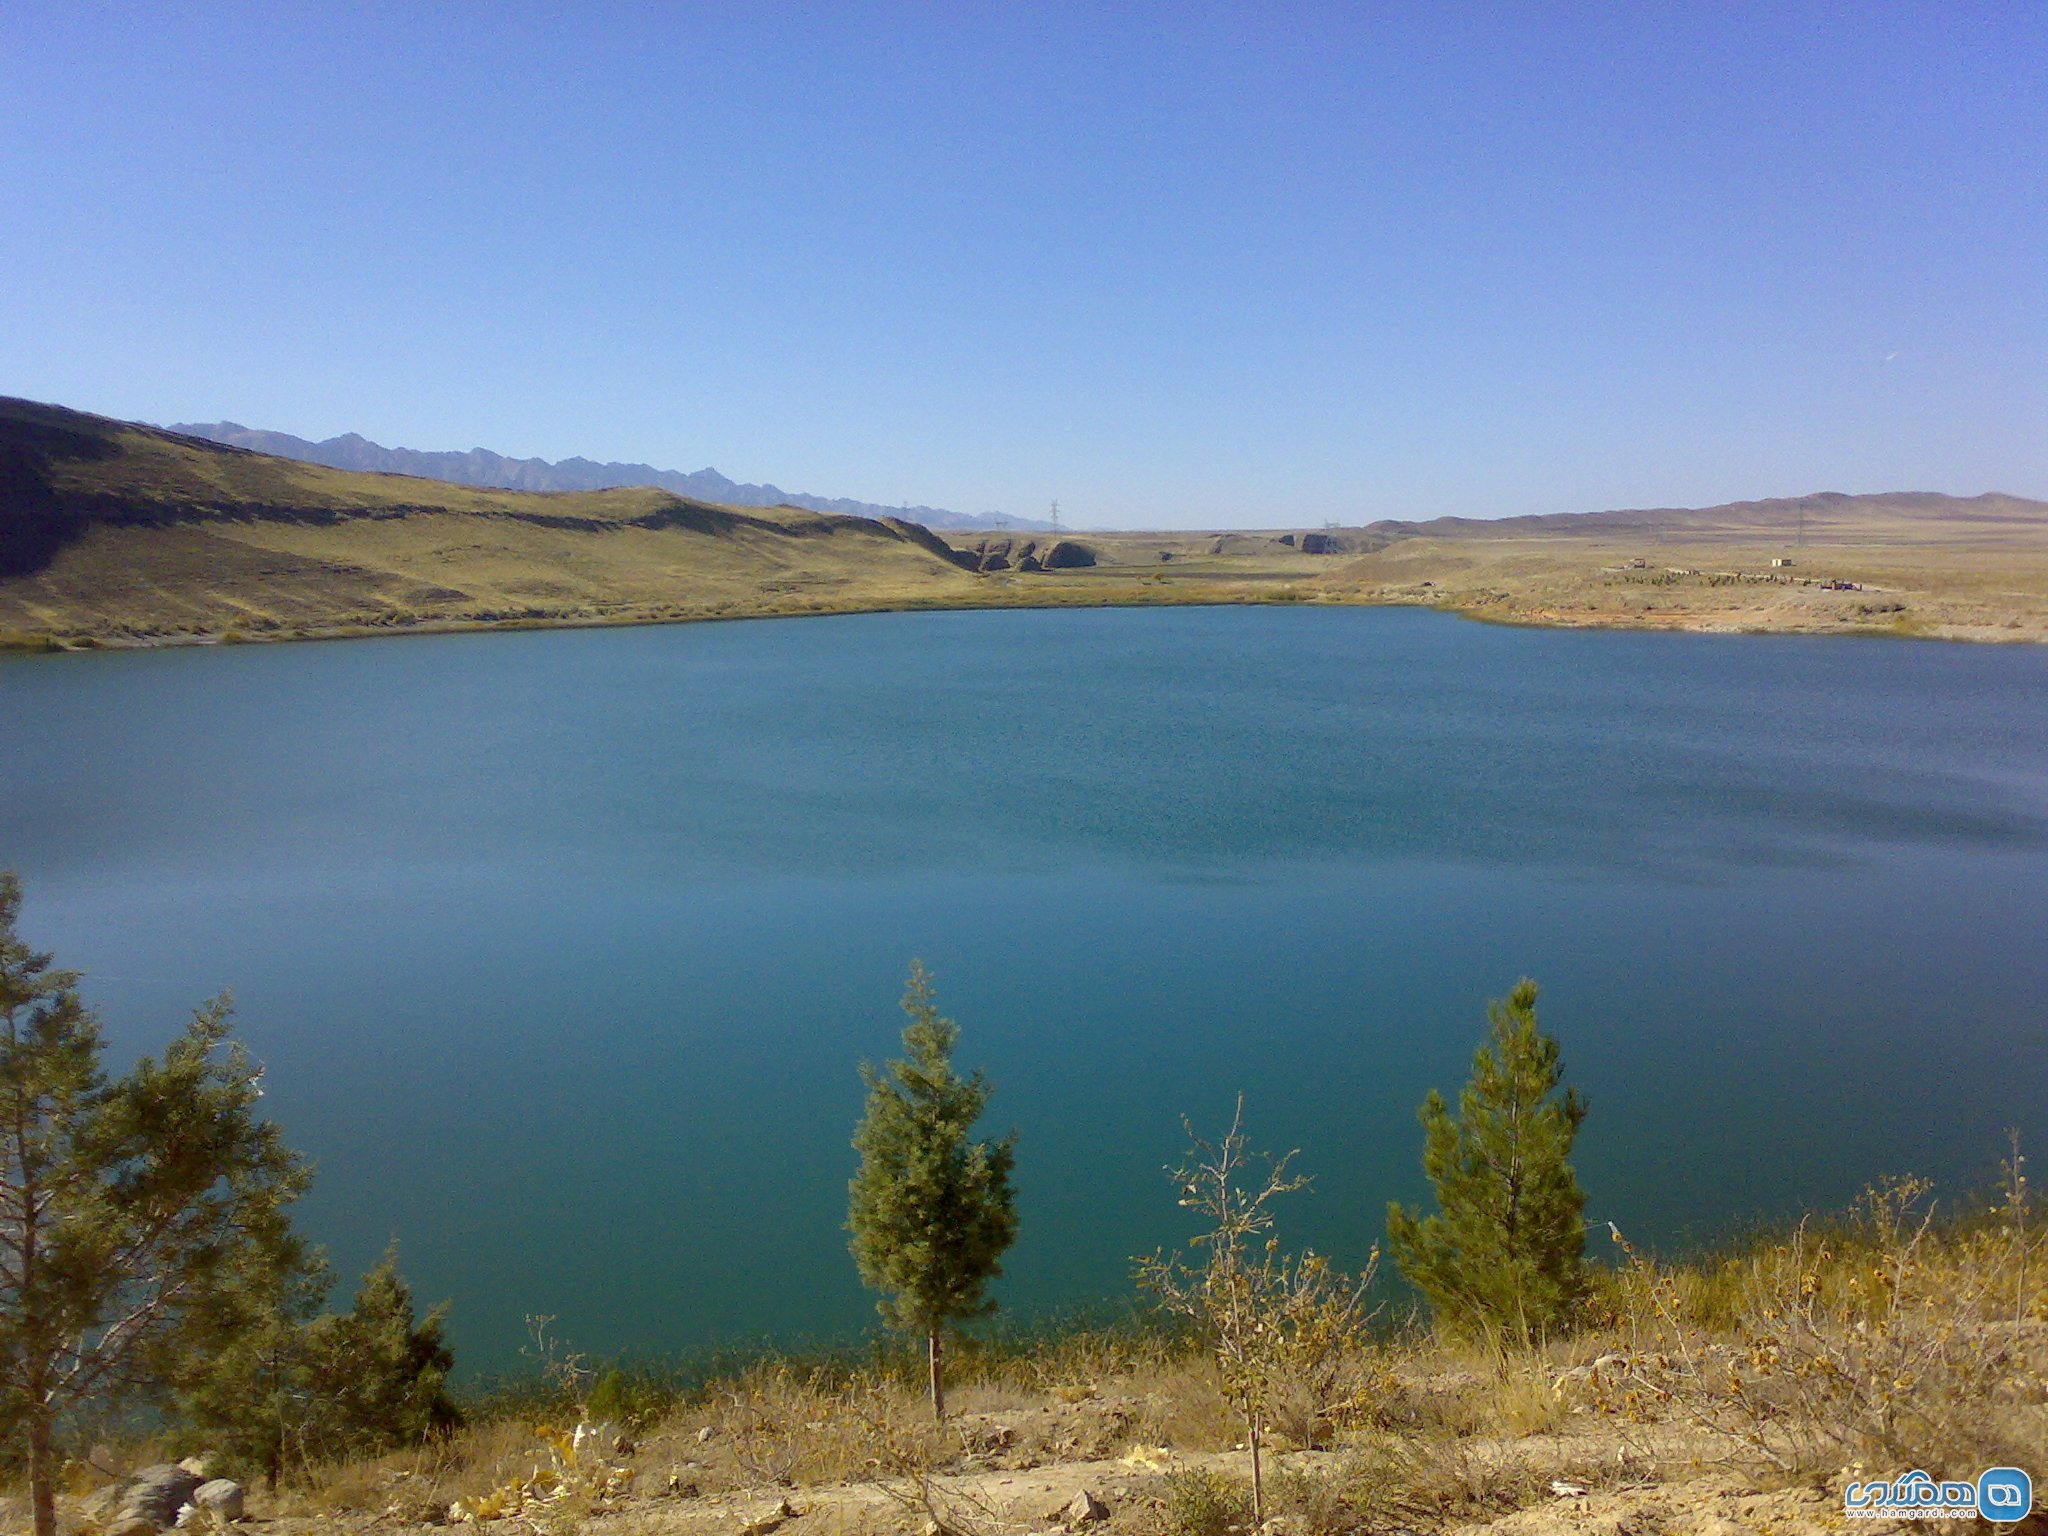  دریاچه بزنگان زیبا